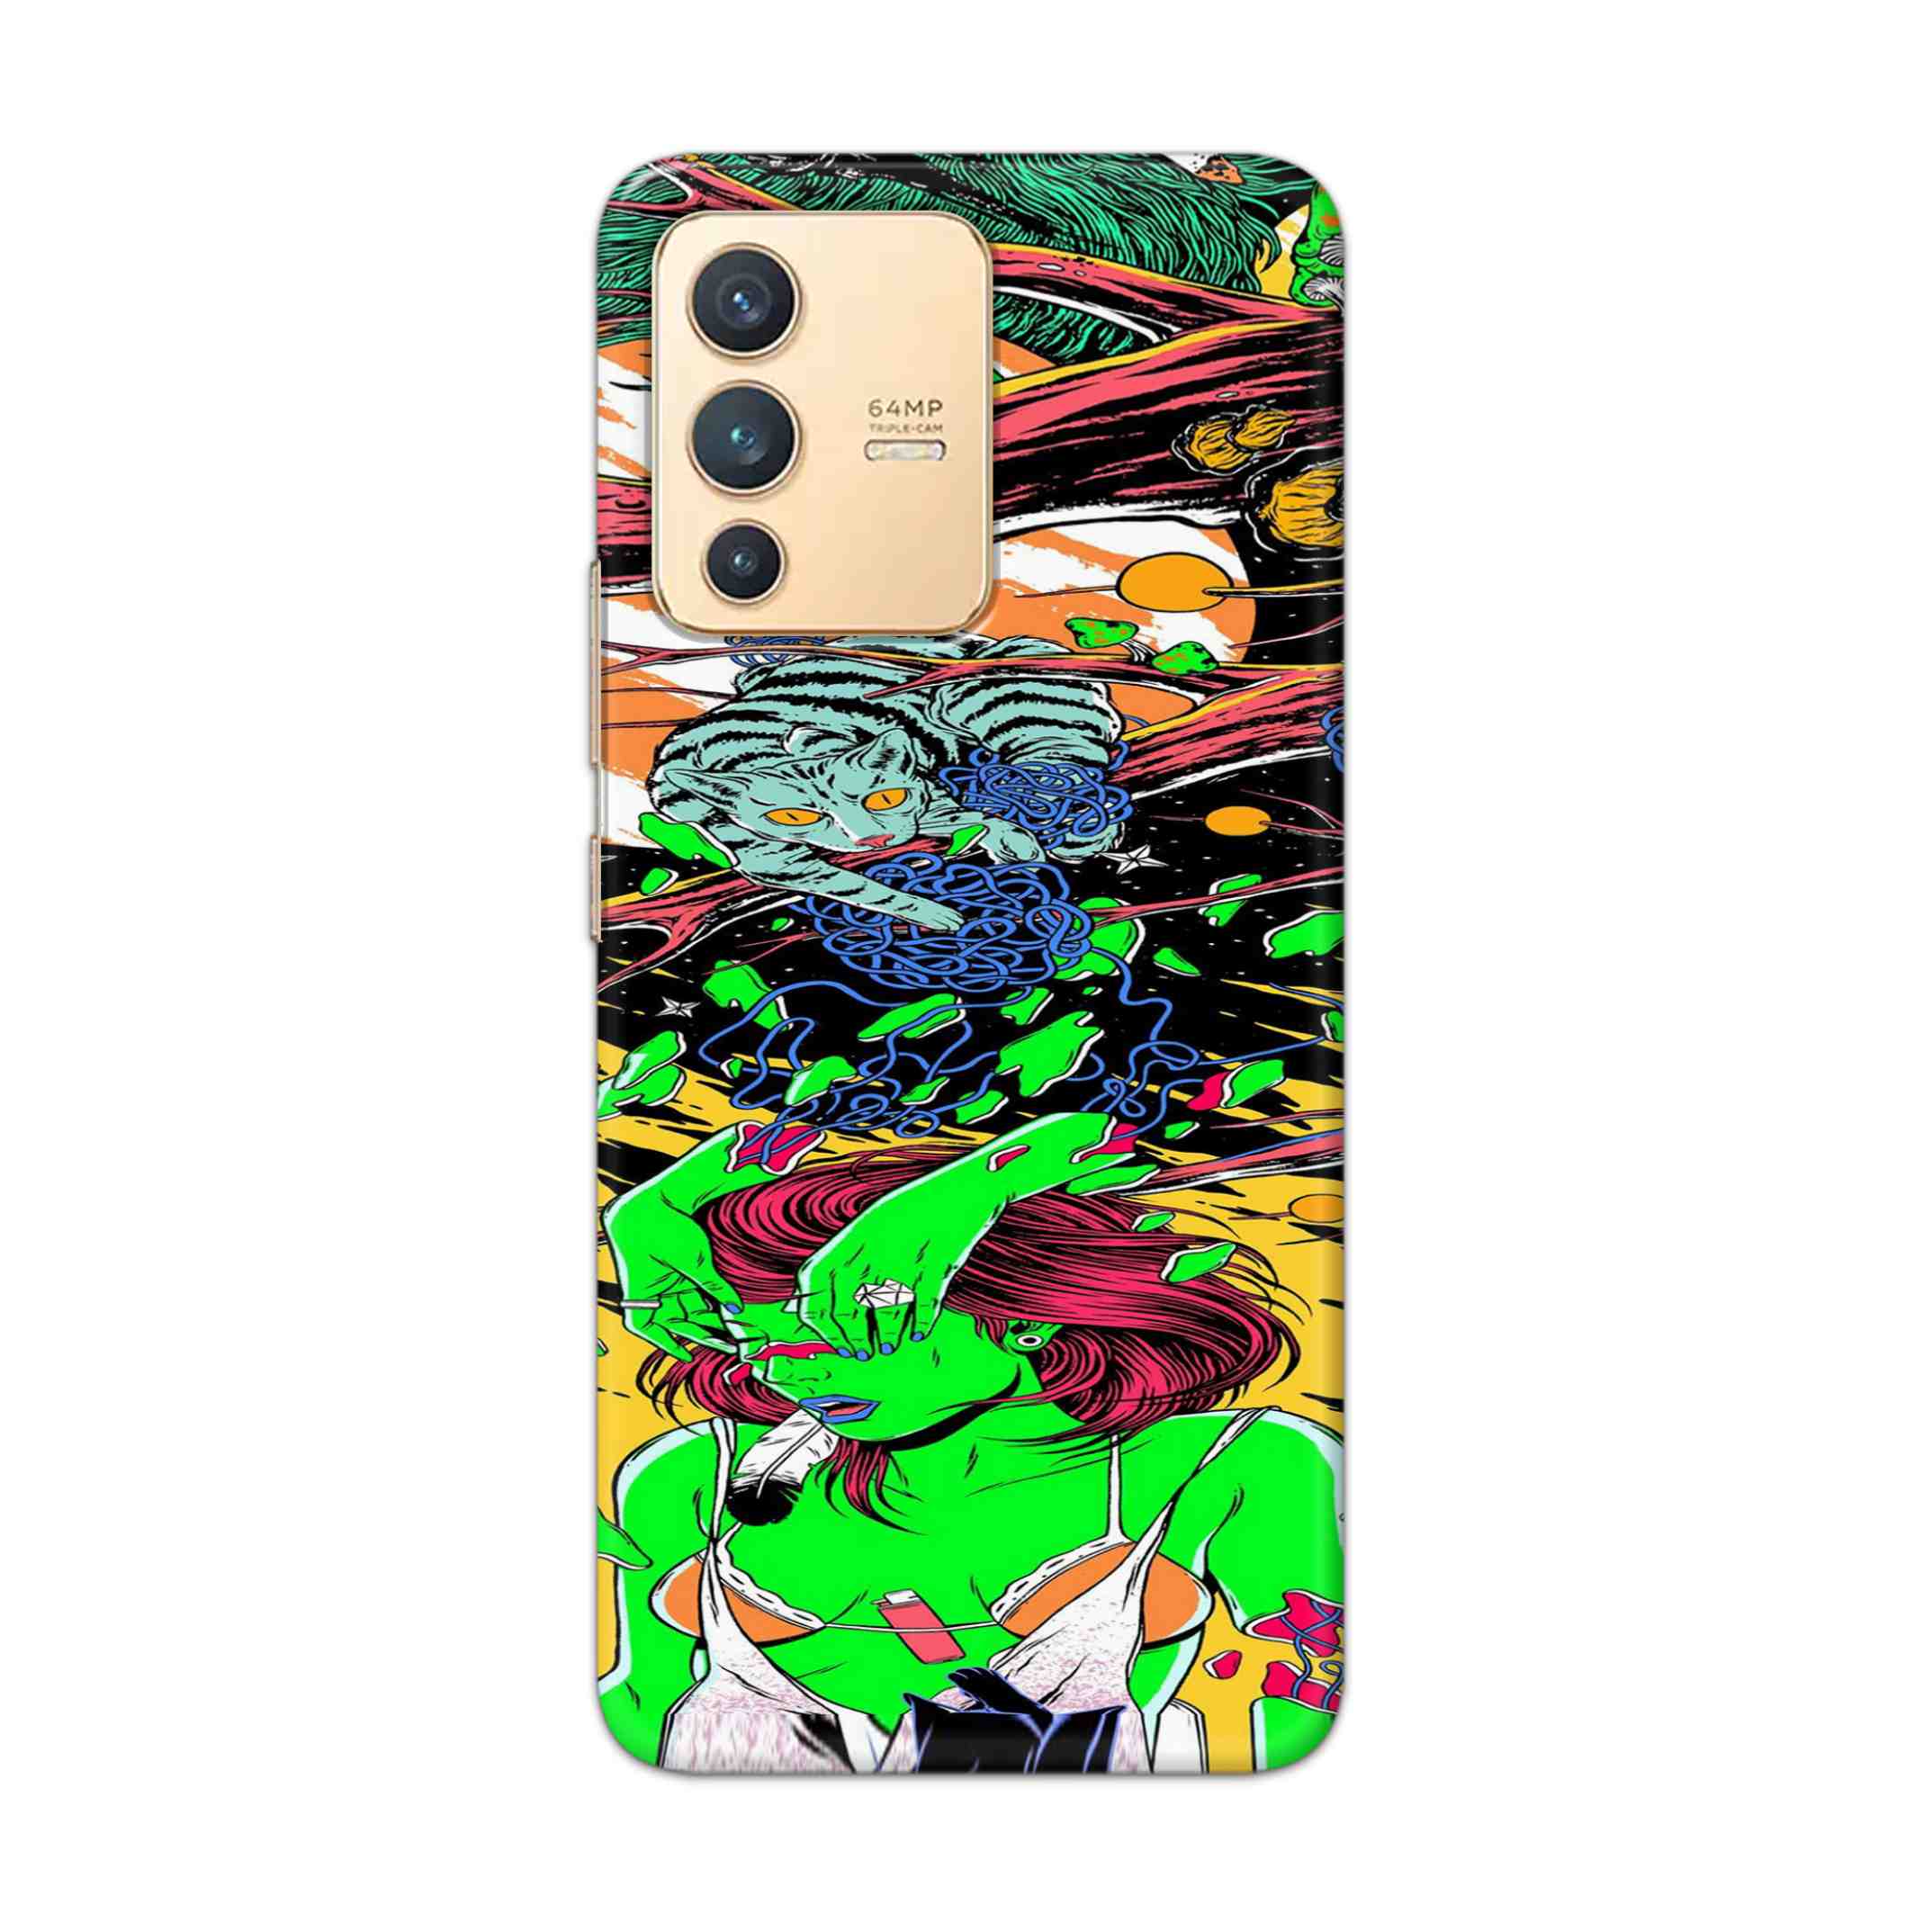 Buy Green Girl Art Hard Back Mobile Phone Case Cover For Vivo V23 Online